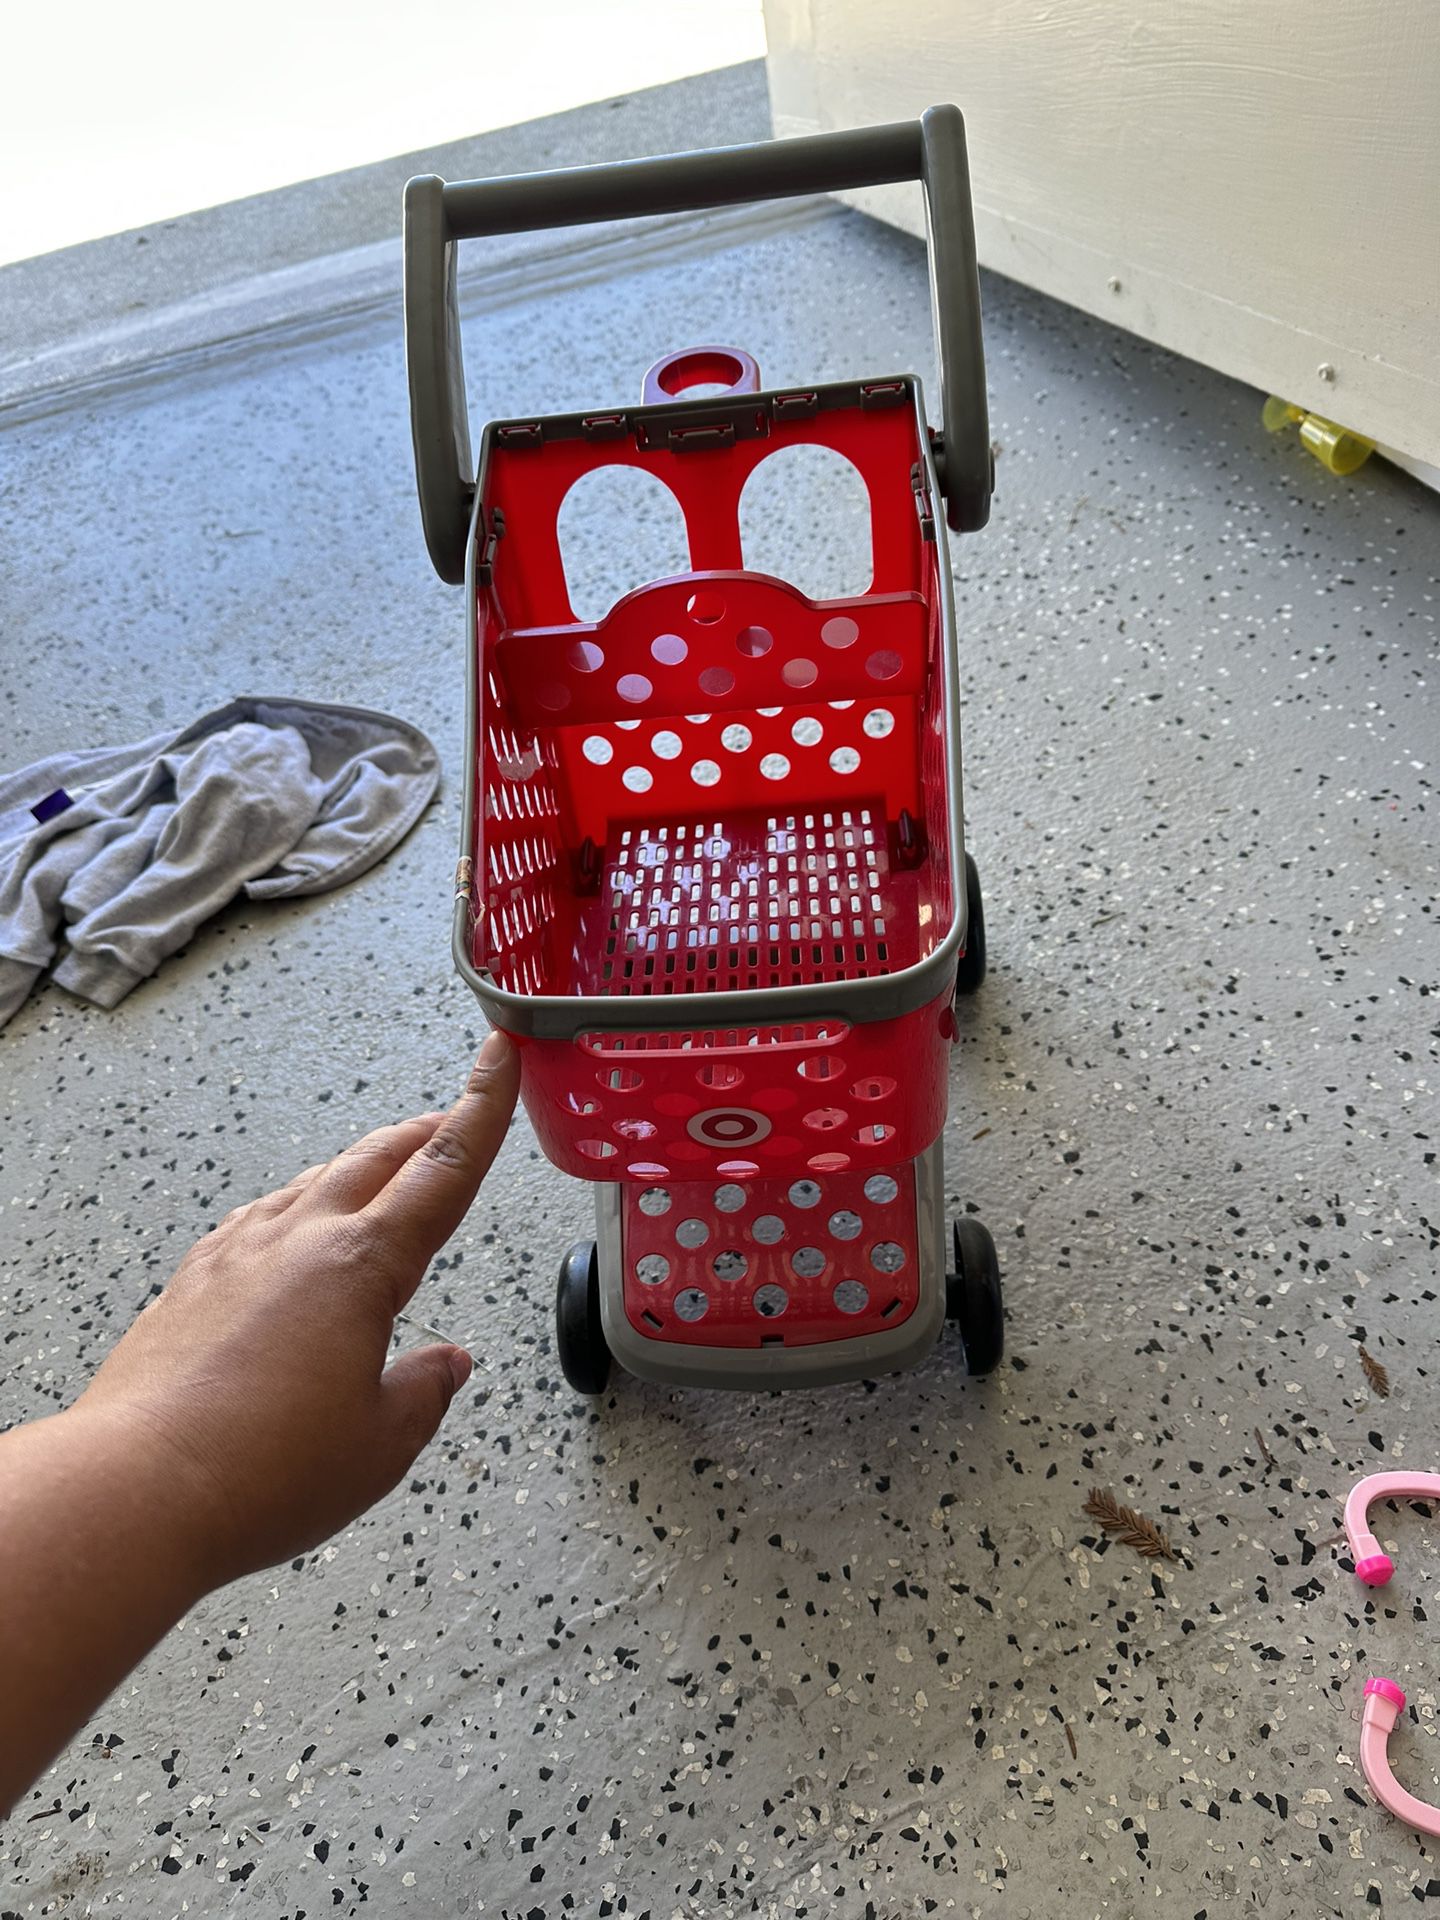 Target Shopping Cart 